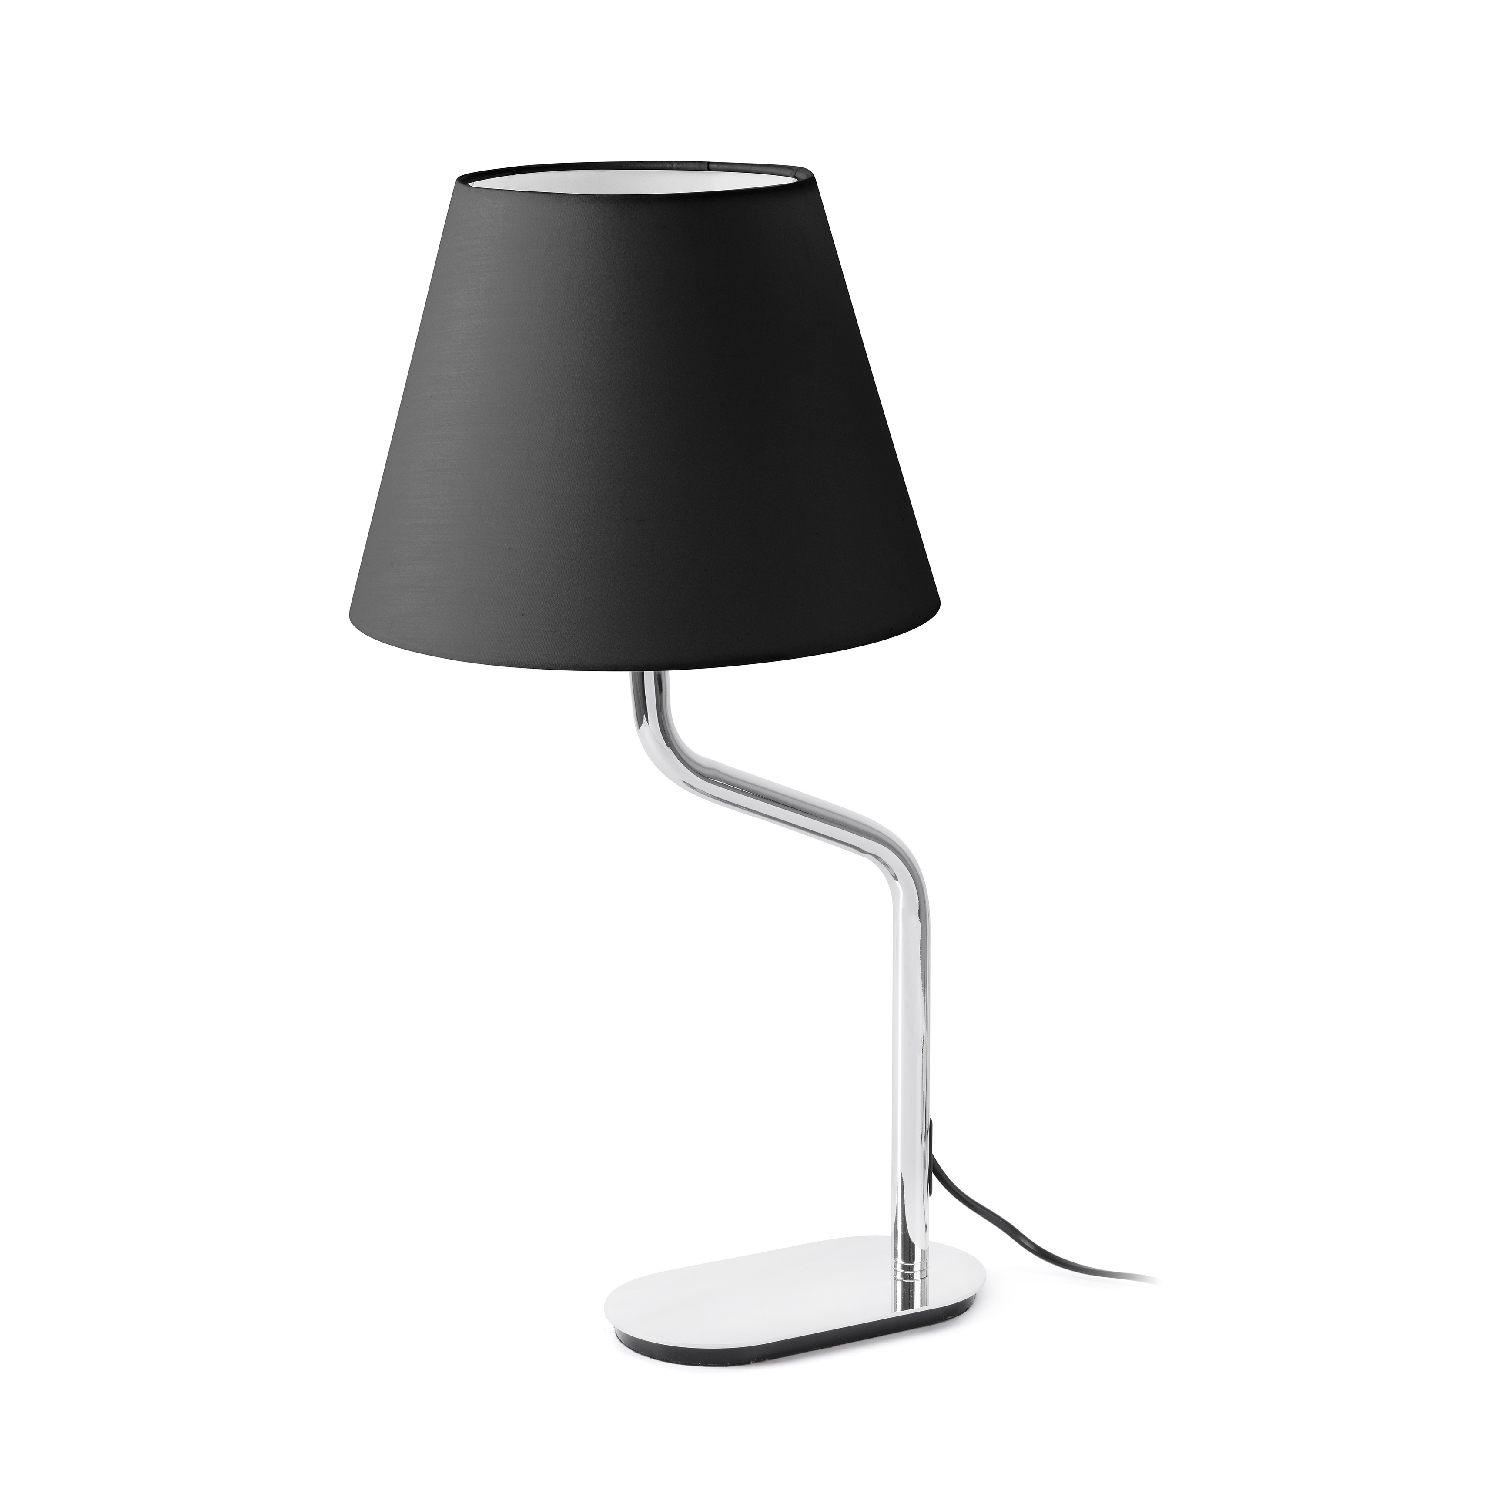 Veioza / Lampa de masa moderna design elegant ETERNA crom/negru 24008-15 